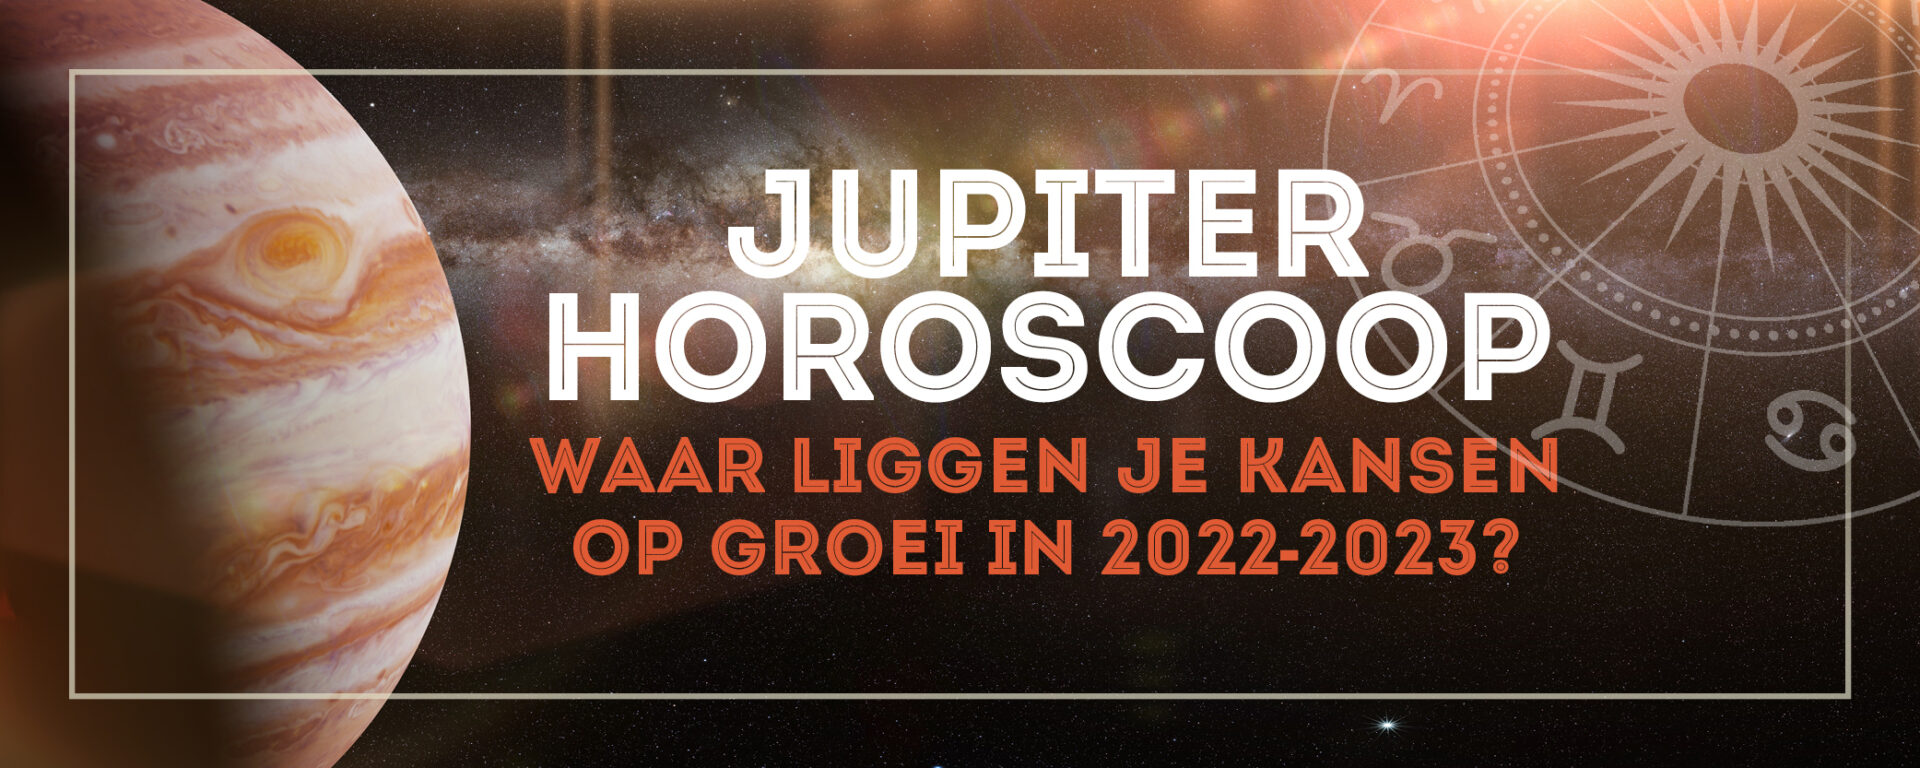 Jupiter Horoscoop: jouw kansen op groei & financieel succes in 2022-2023